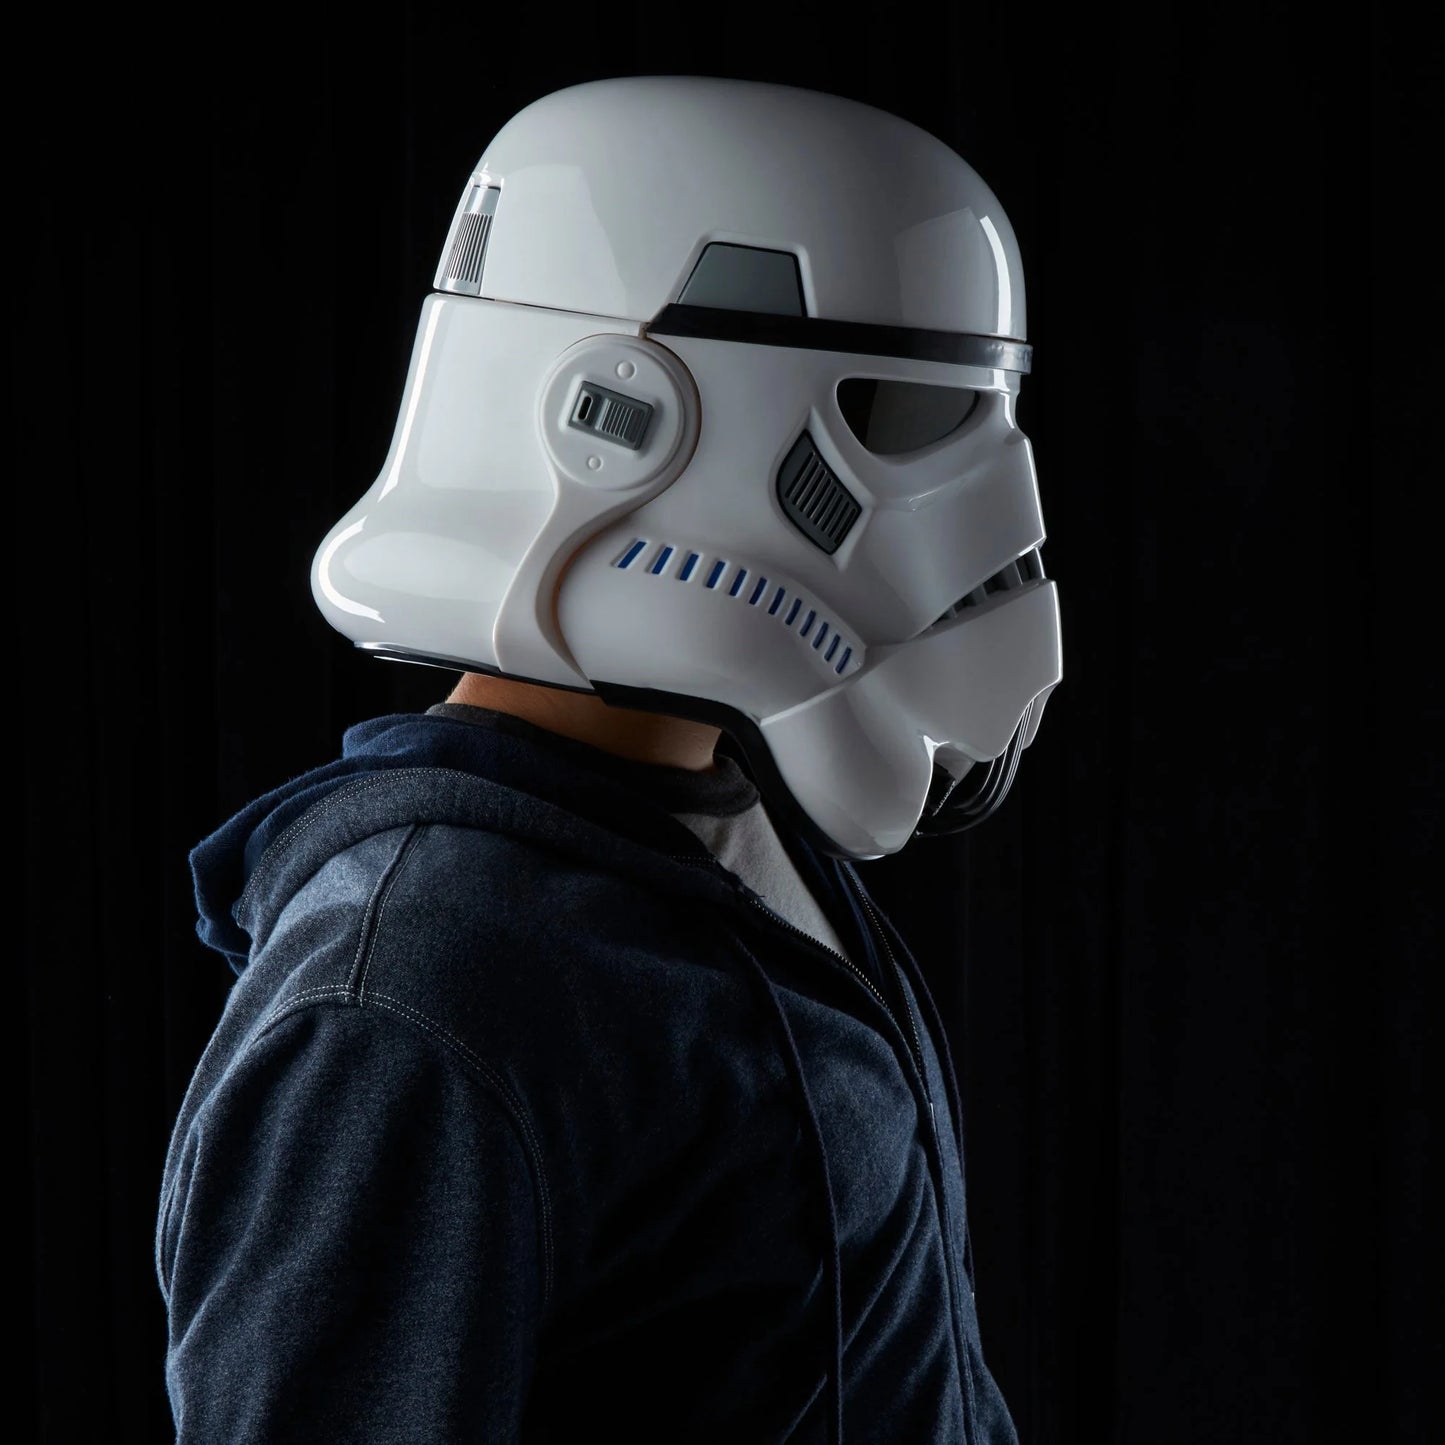 Star Wars Black Series Imperial Stormtrooper Helmet Replica